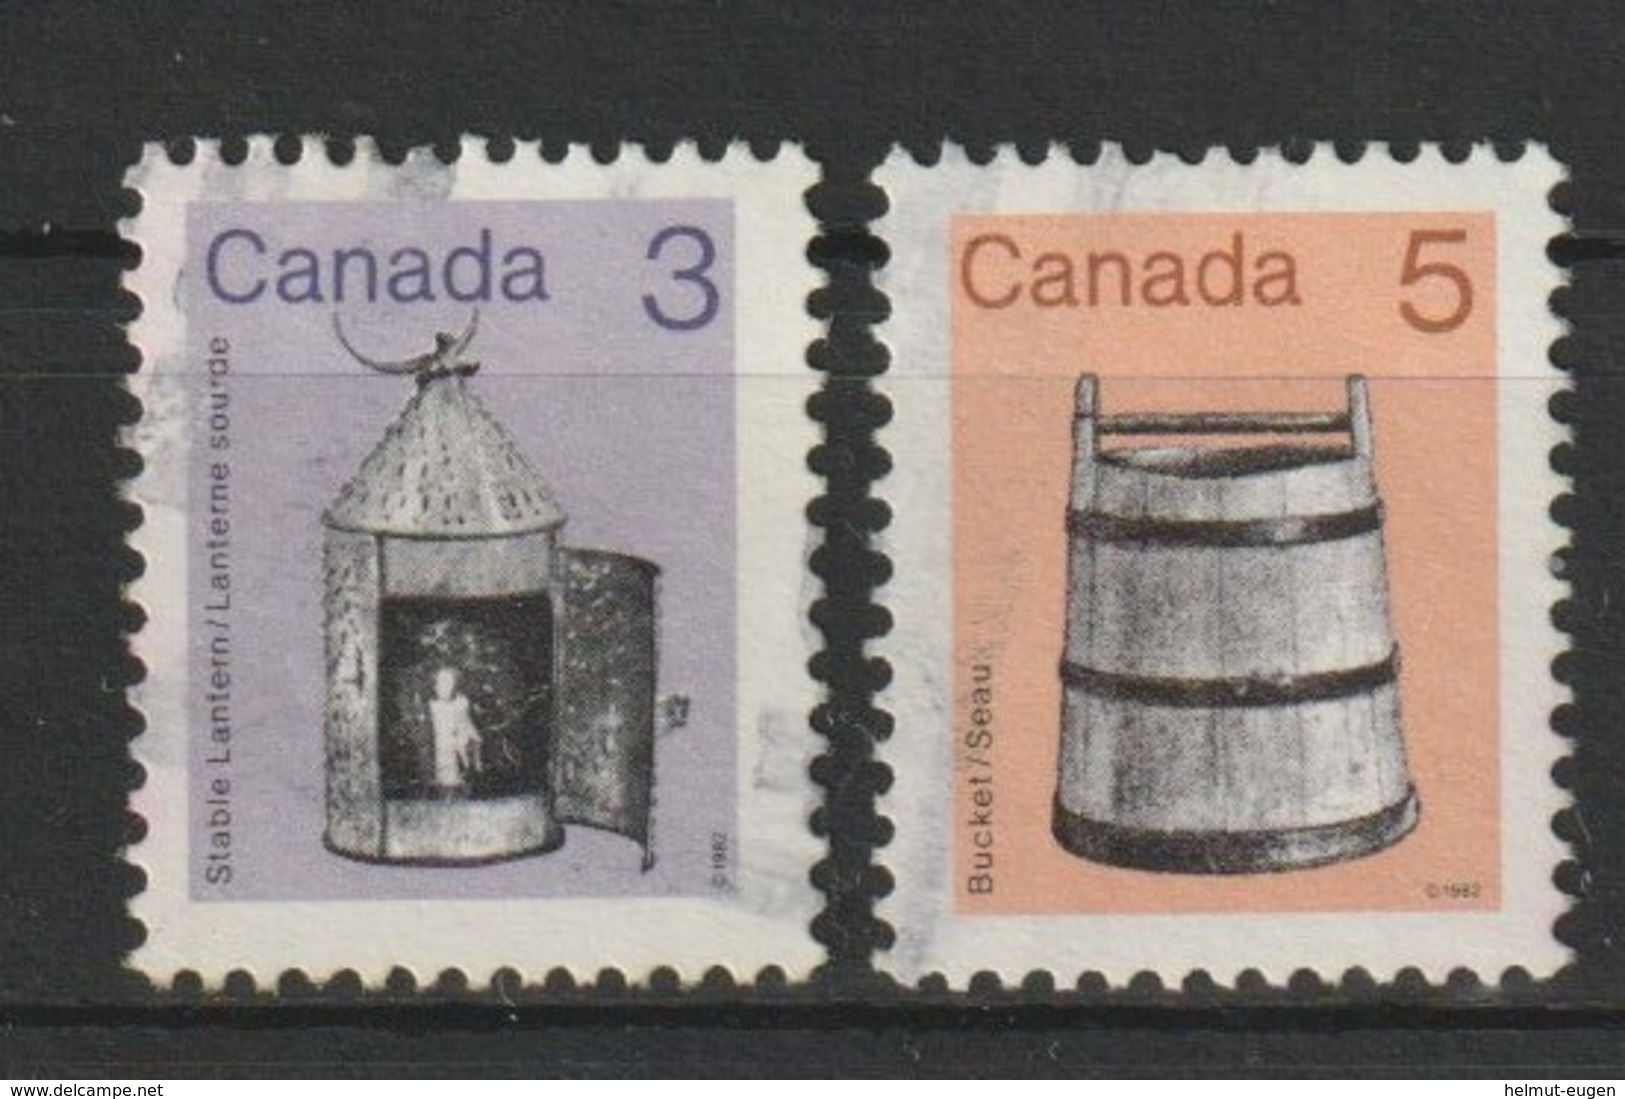 MiNr. 855, 856 Kanada (Dominion), 1982, 19. Okt./1985. Freimarken: Alte Gebrauchsgegenstände. - Gebraucht